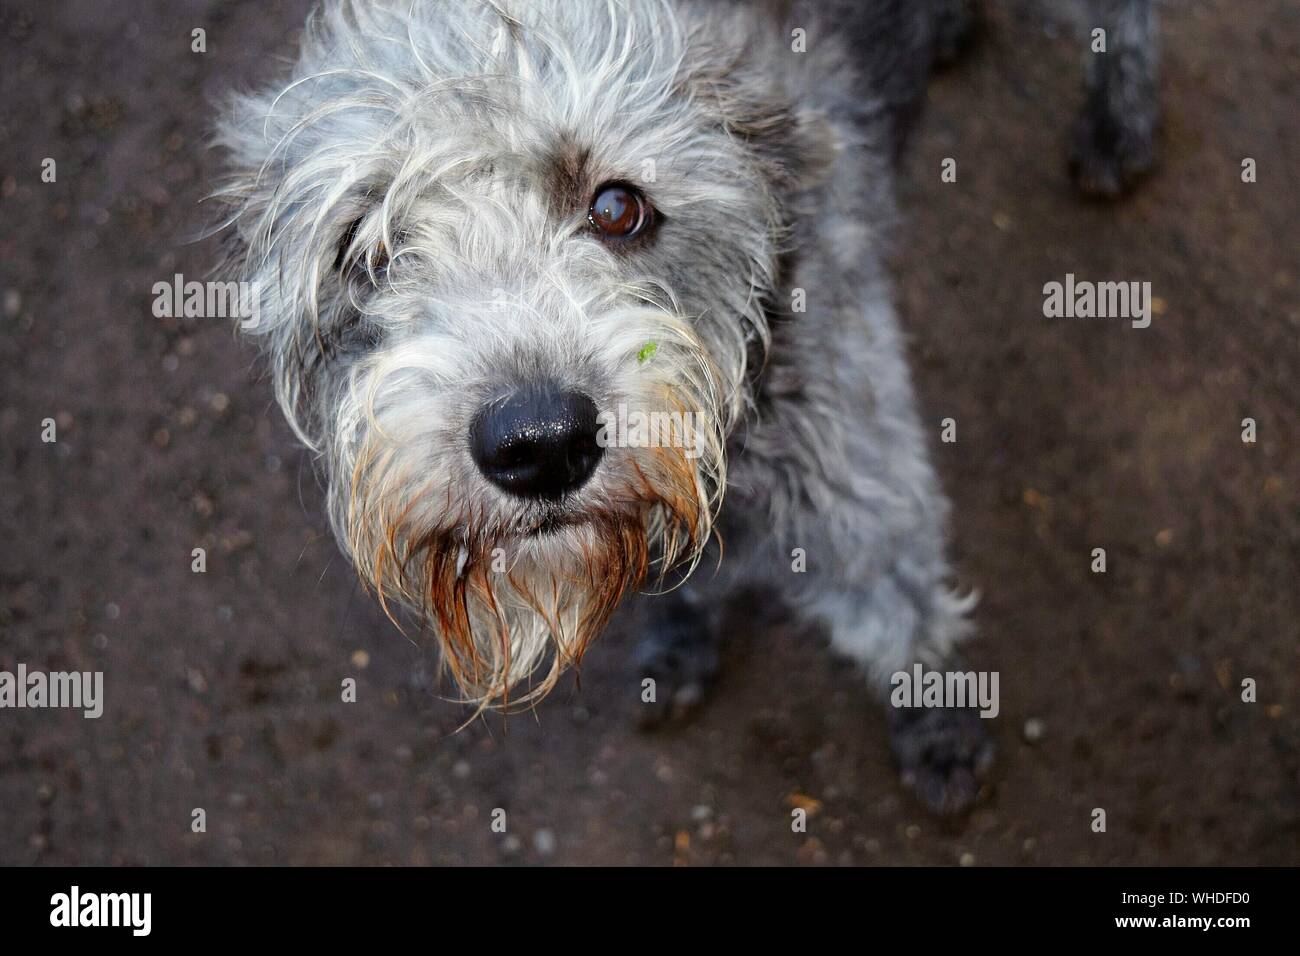 Close-up Of Dog Looking At Camera Stock Photo